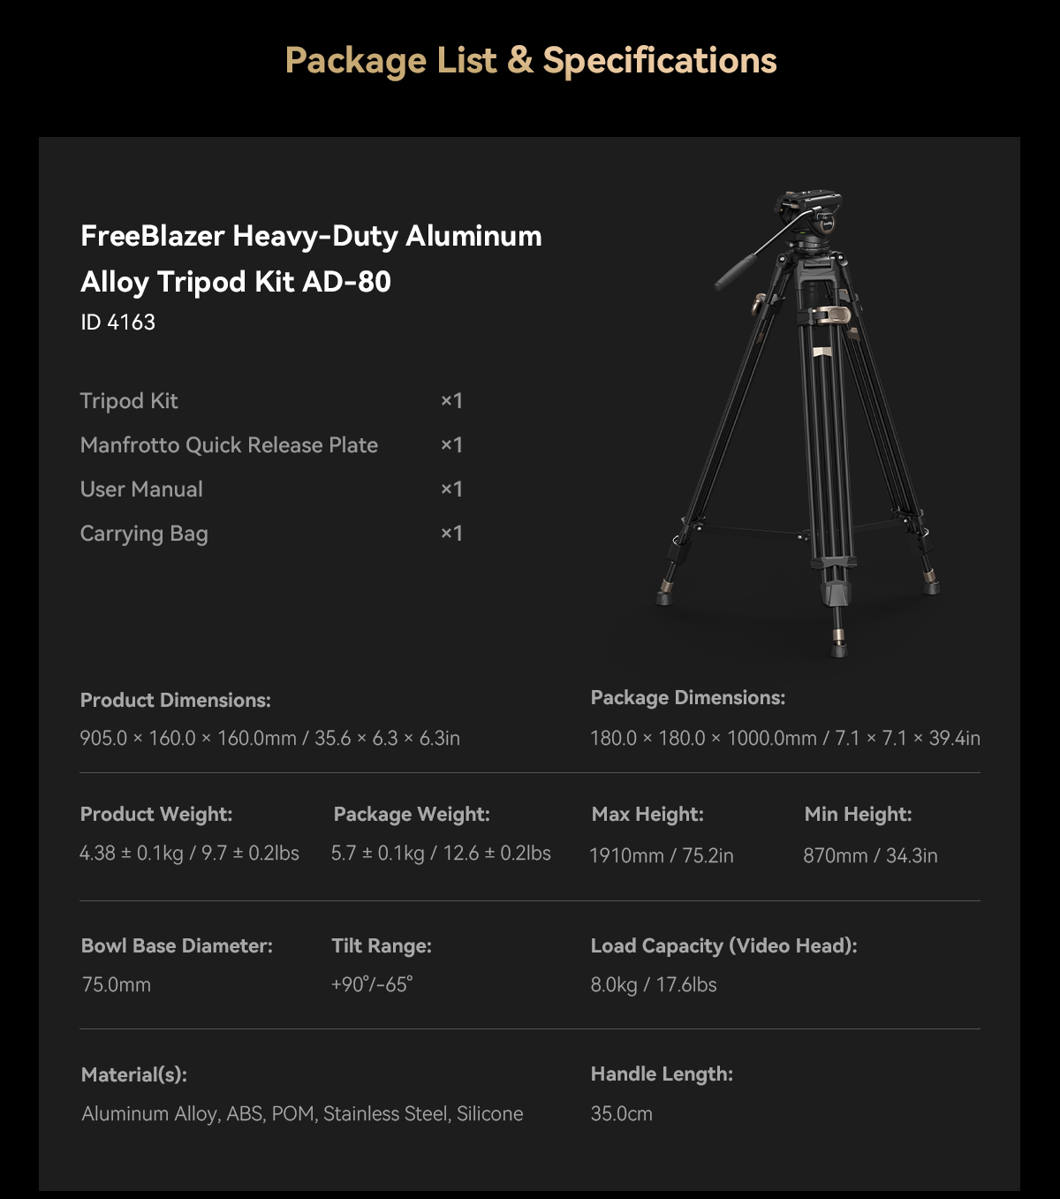 4163 Heavy-Duty Aluminium Video Tripod Kit FreeBlazer AD-80